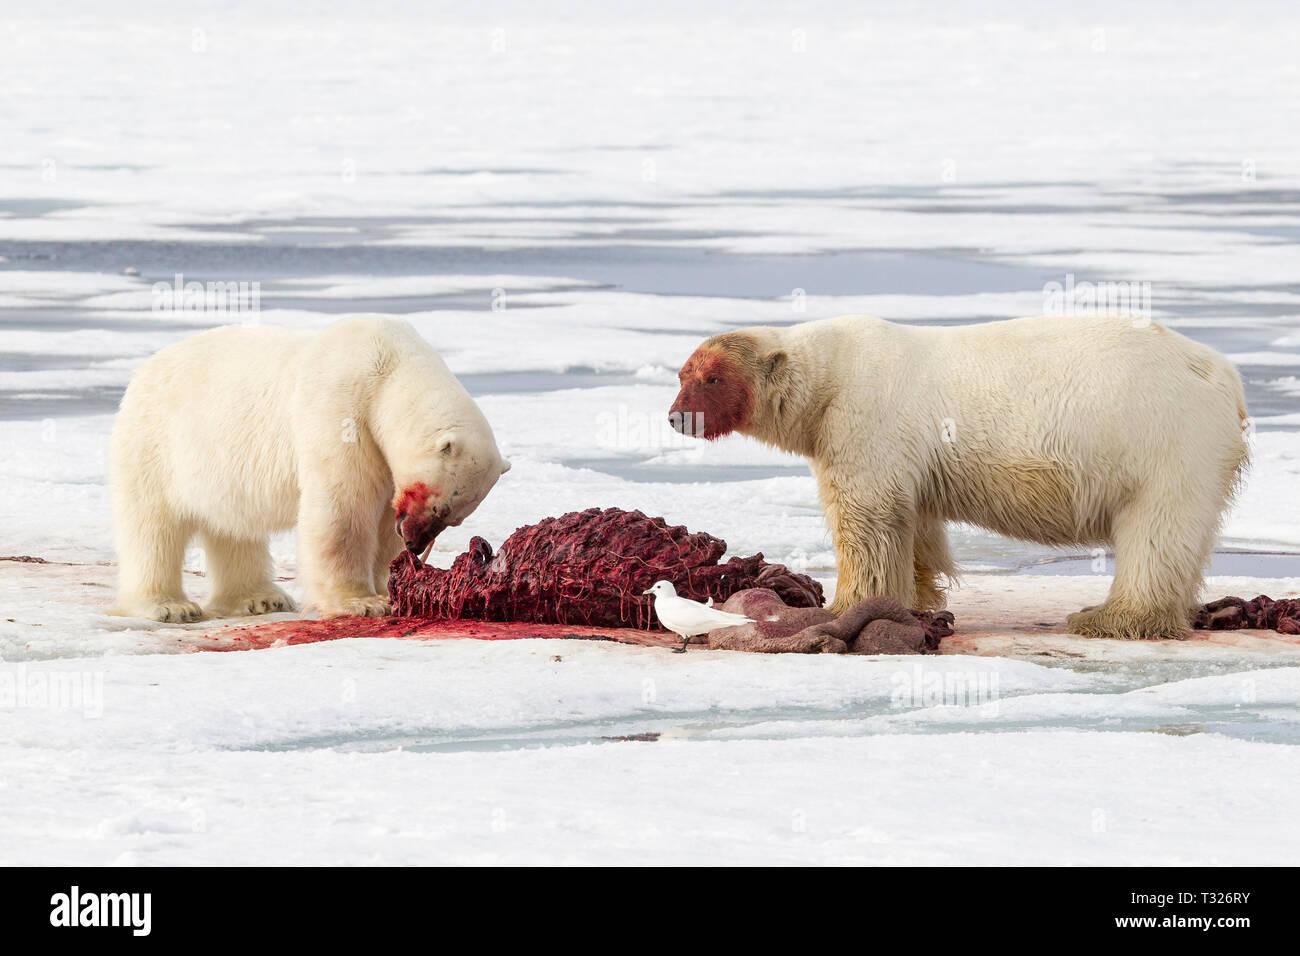 L'alimentation des ours polaires, morses morts Ursus maritimus, Spitzberg, l'océan Arctique, en Norvège Banque D'Images